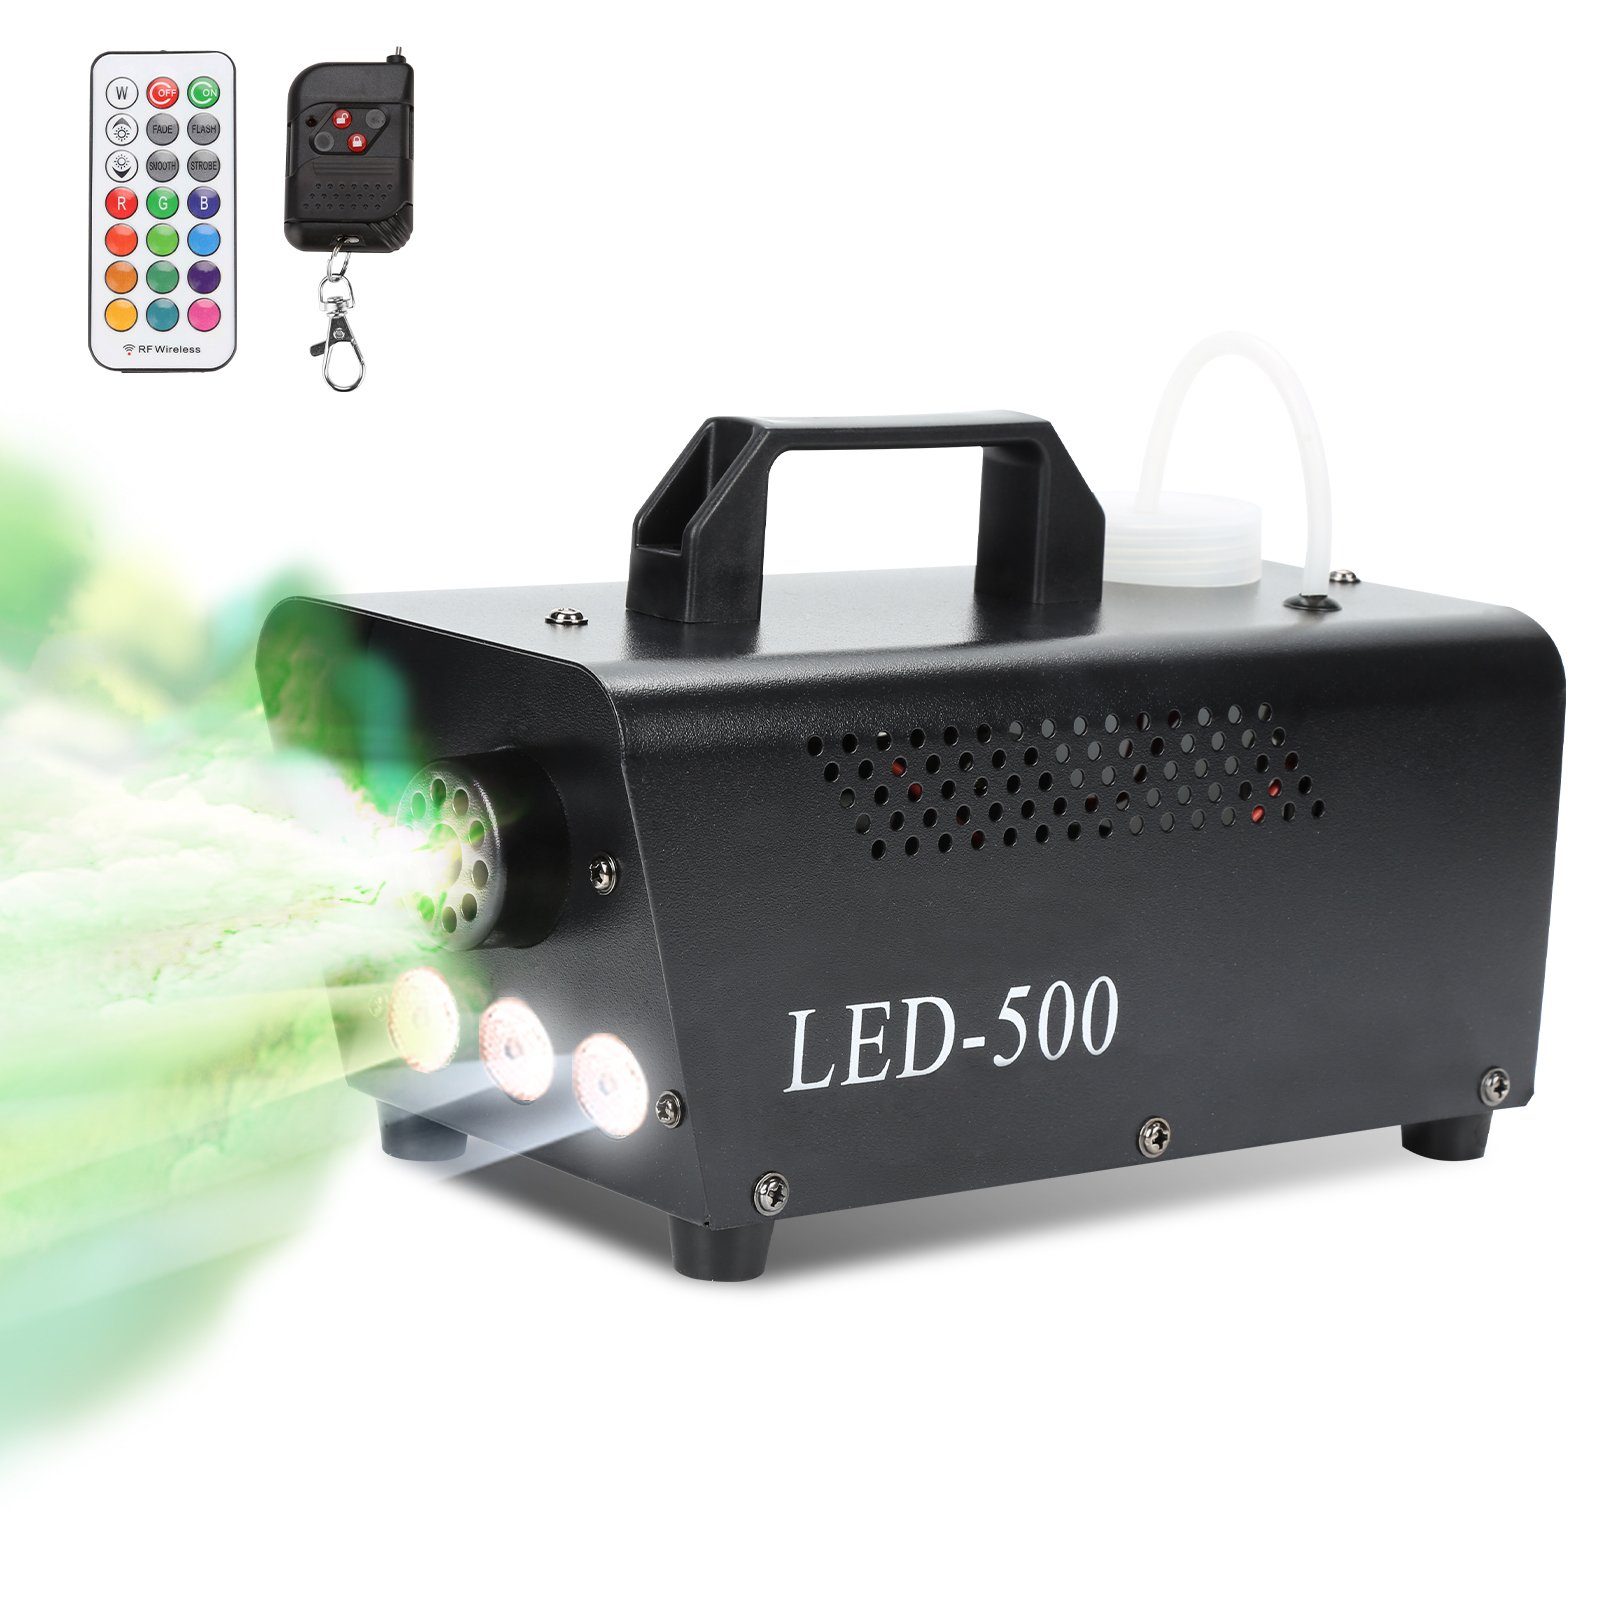 Clanmacy LED Discolicht Nebelmaschine RGB Rauch Fernbedienung Smoke LED 500W Show Bühnenlicht